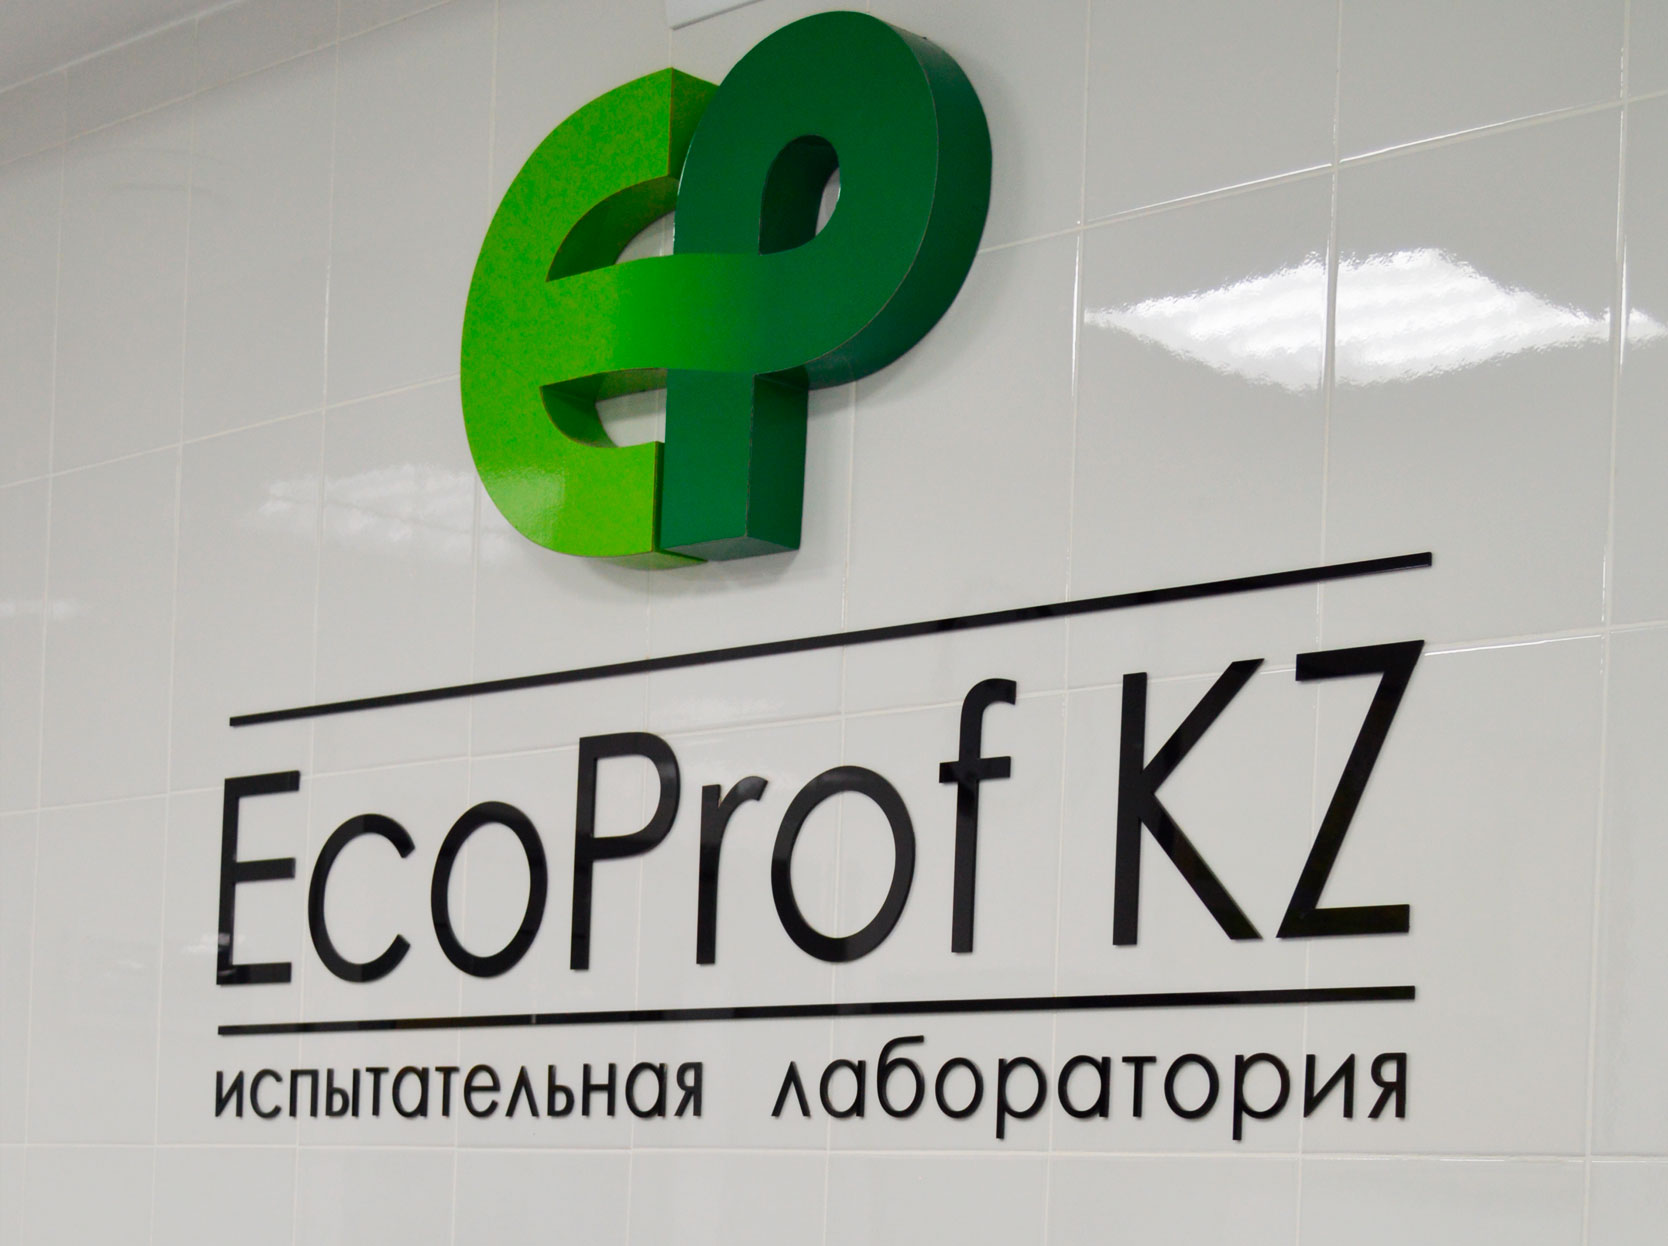 Аккредитация испытательной лаборатории EcoProf KZ